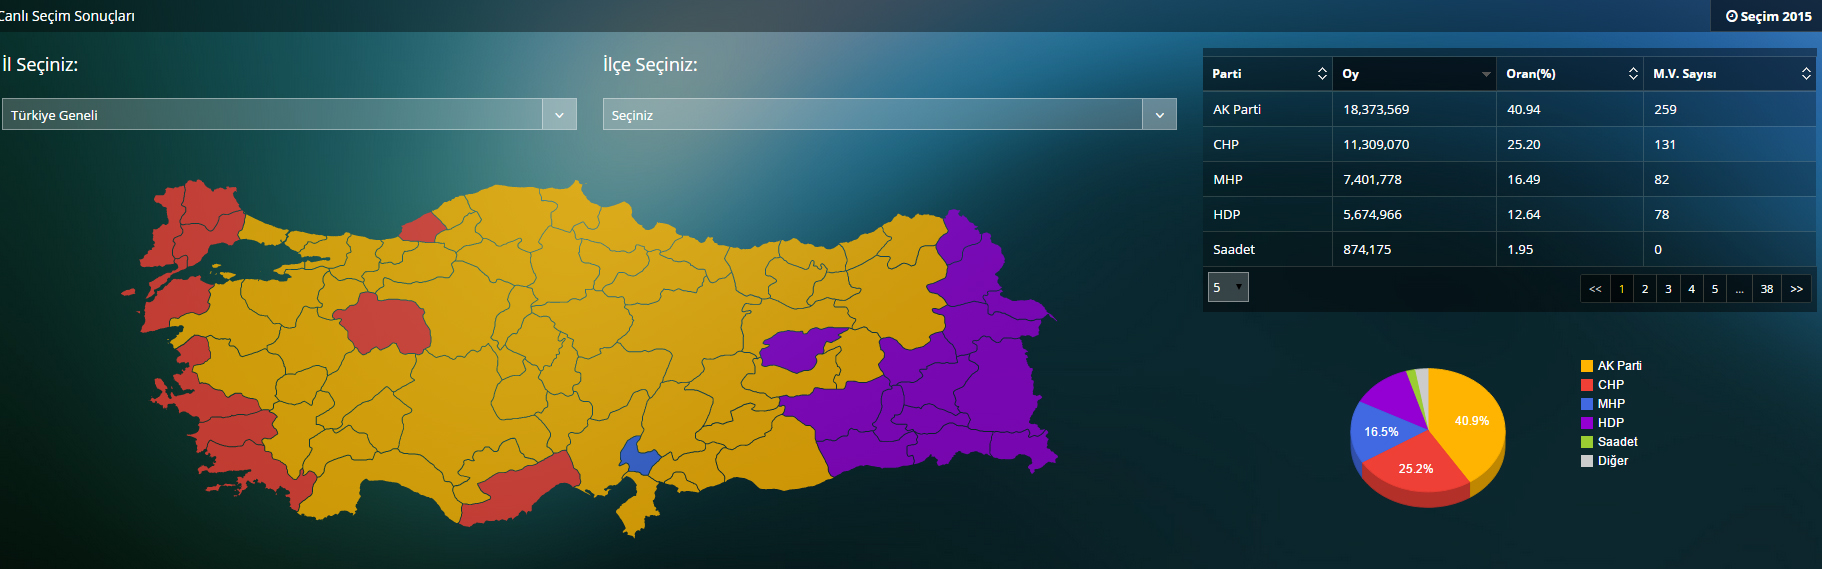 izbori-u-turskoj1